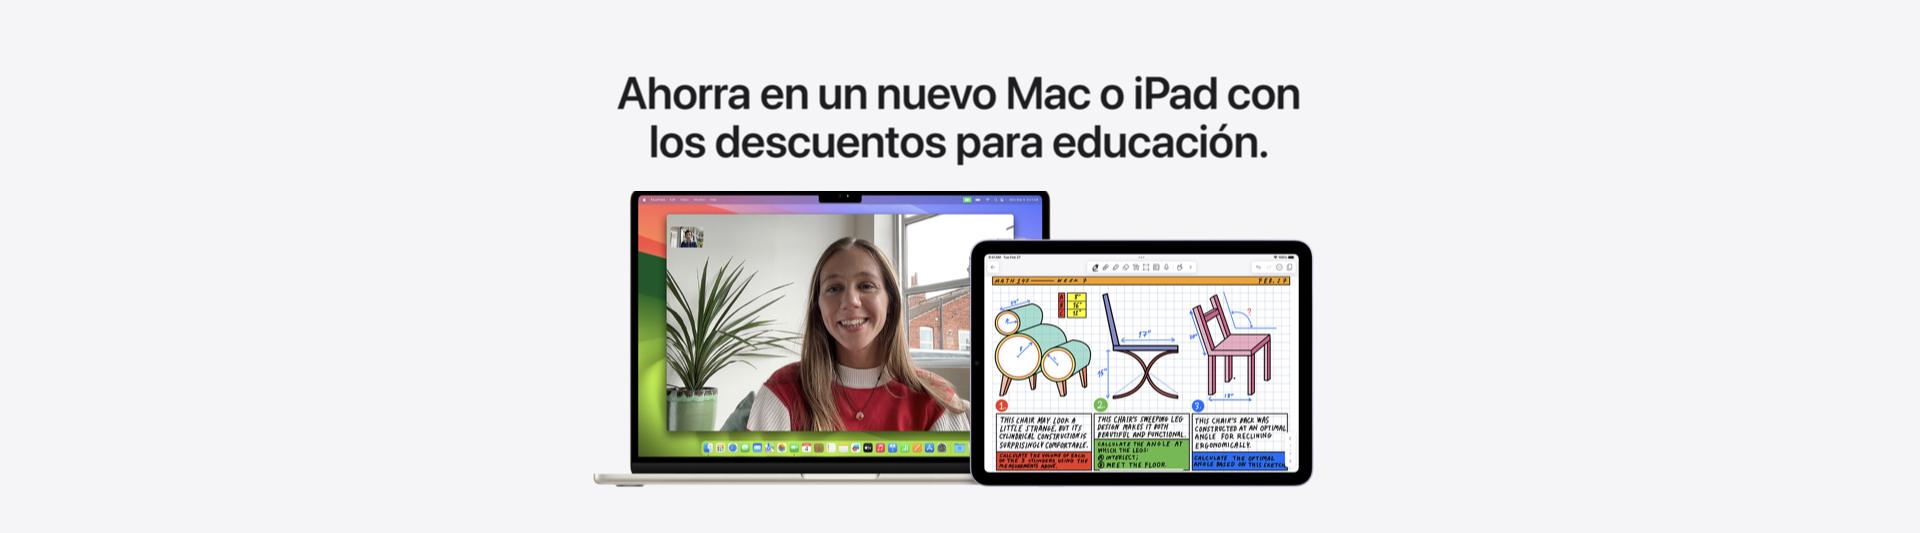 Apple.com/es